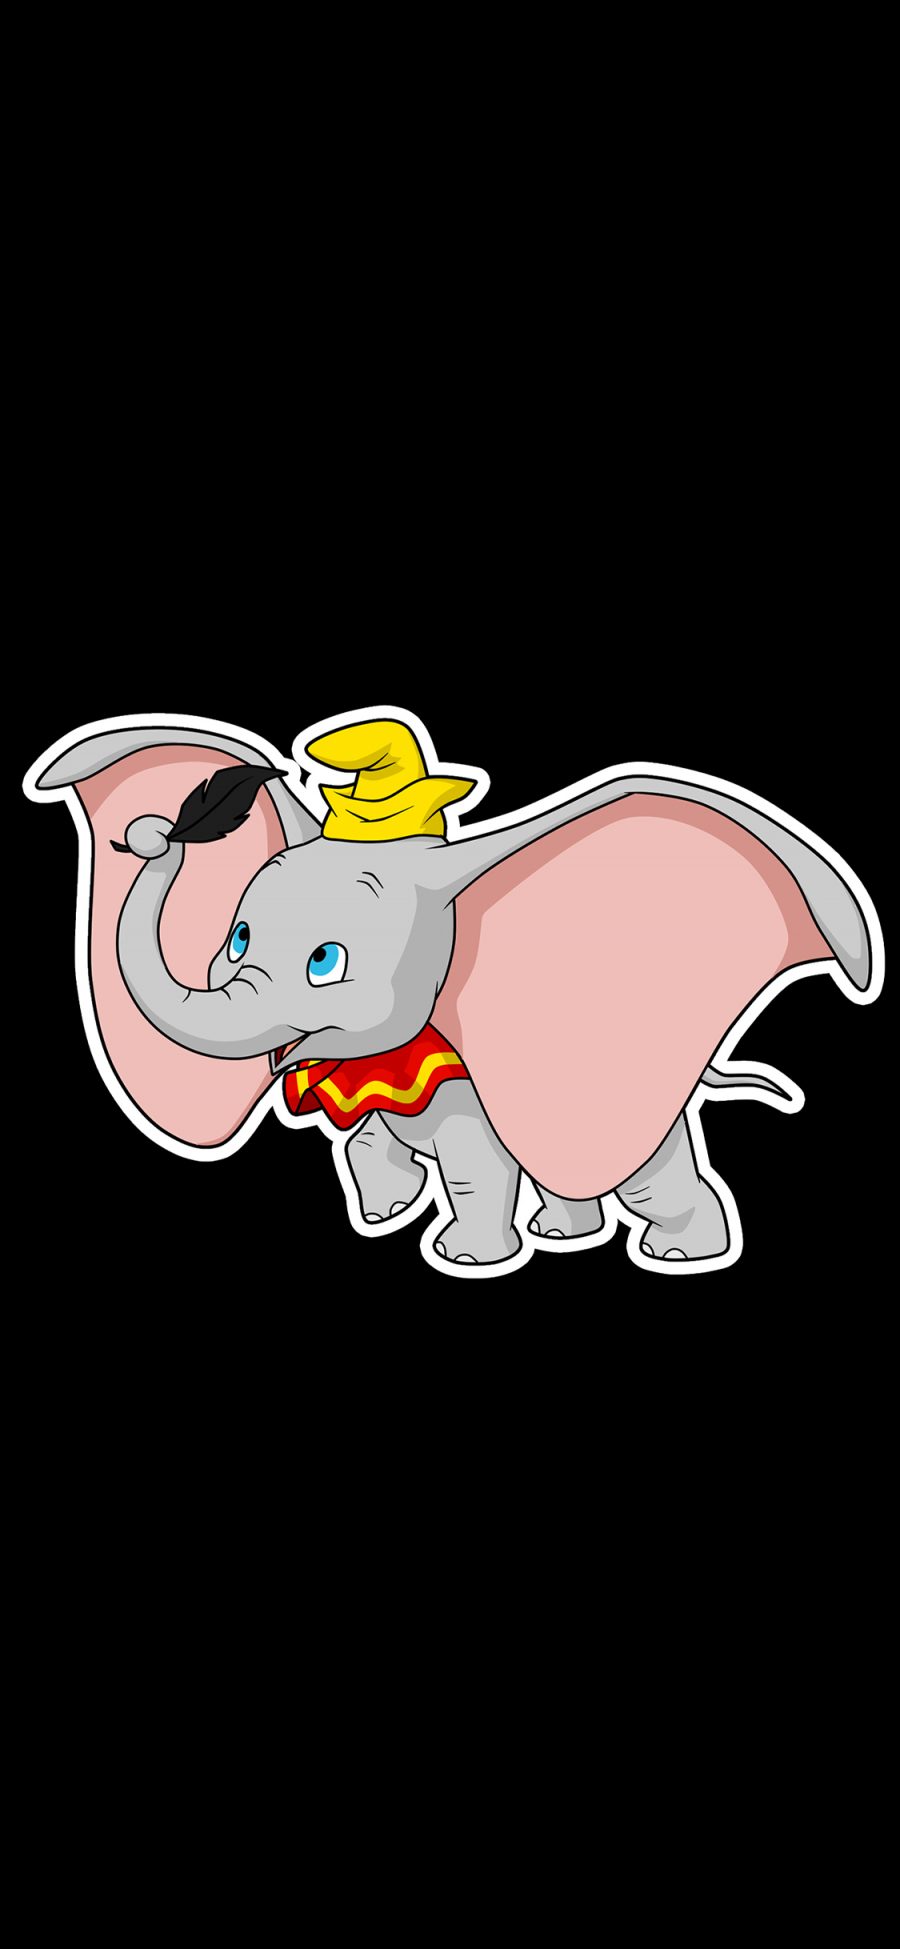 [2436×1125]小飞象 黑色 迪士尼 大象 卡通 动画 苹果手机动漫壁纸图片